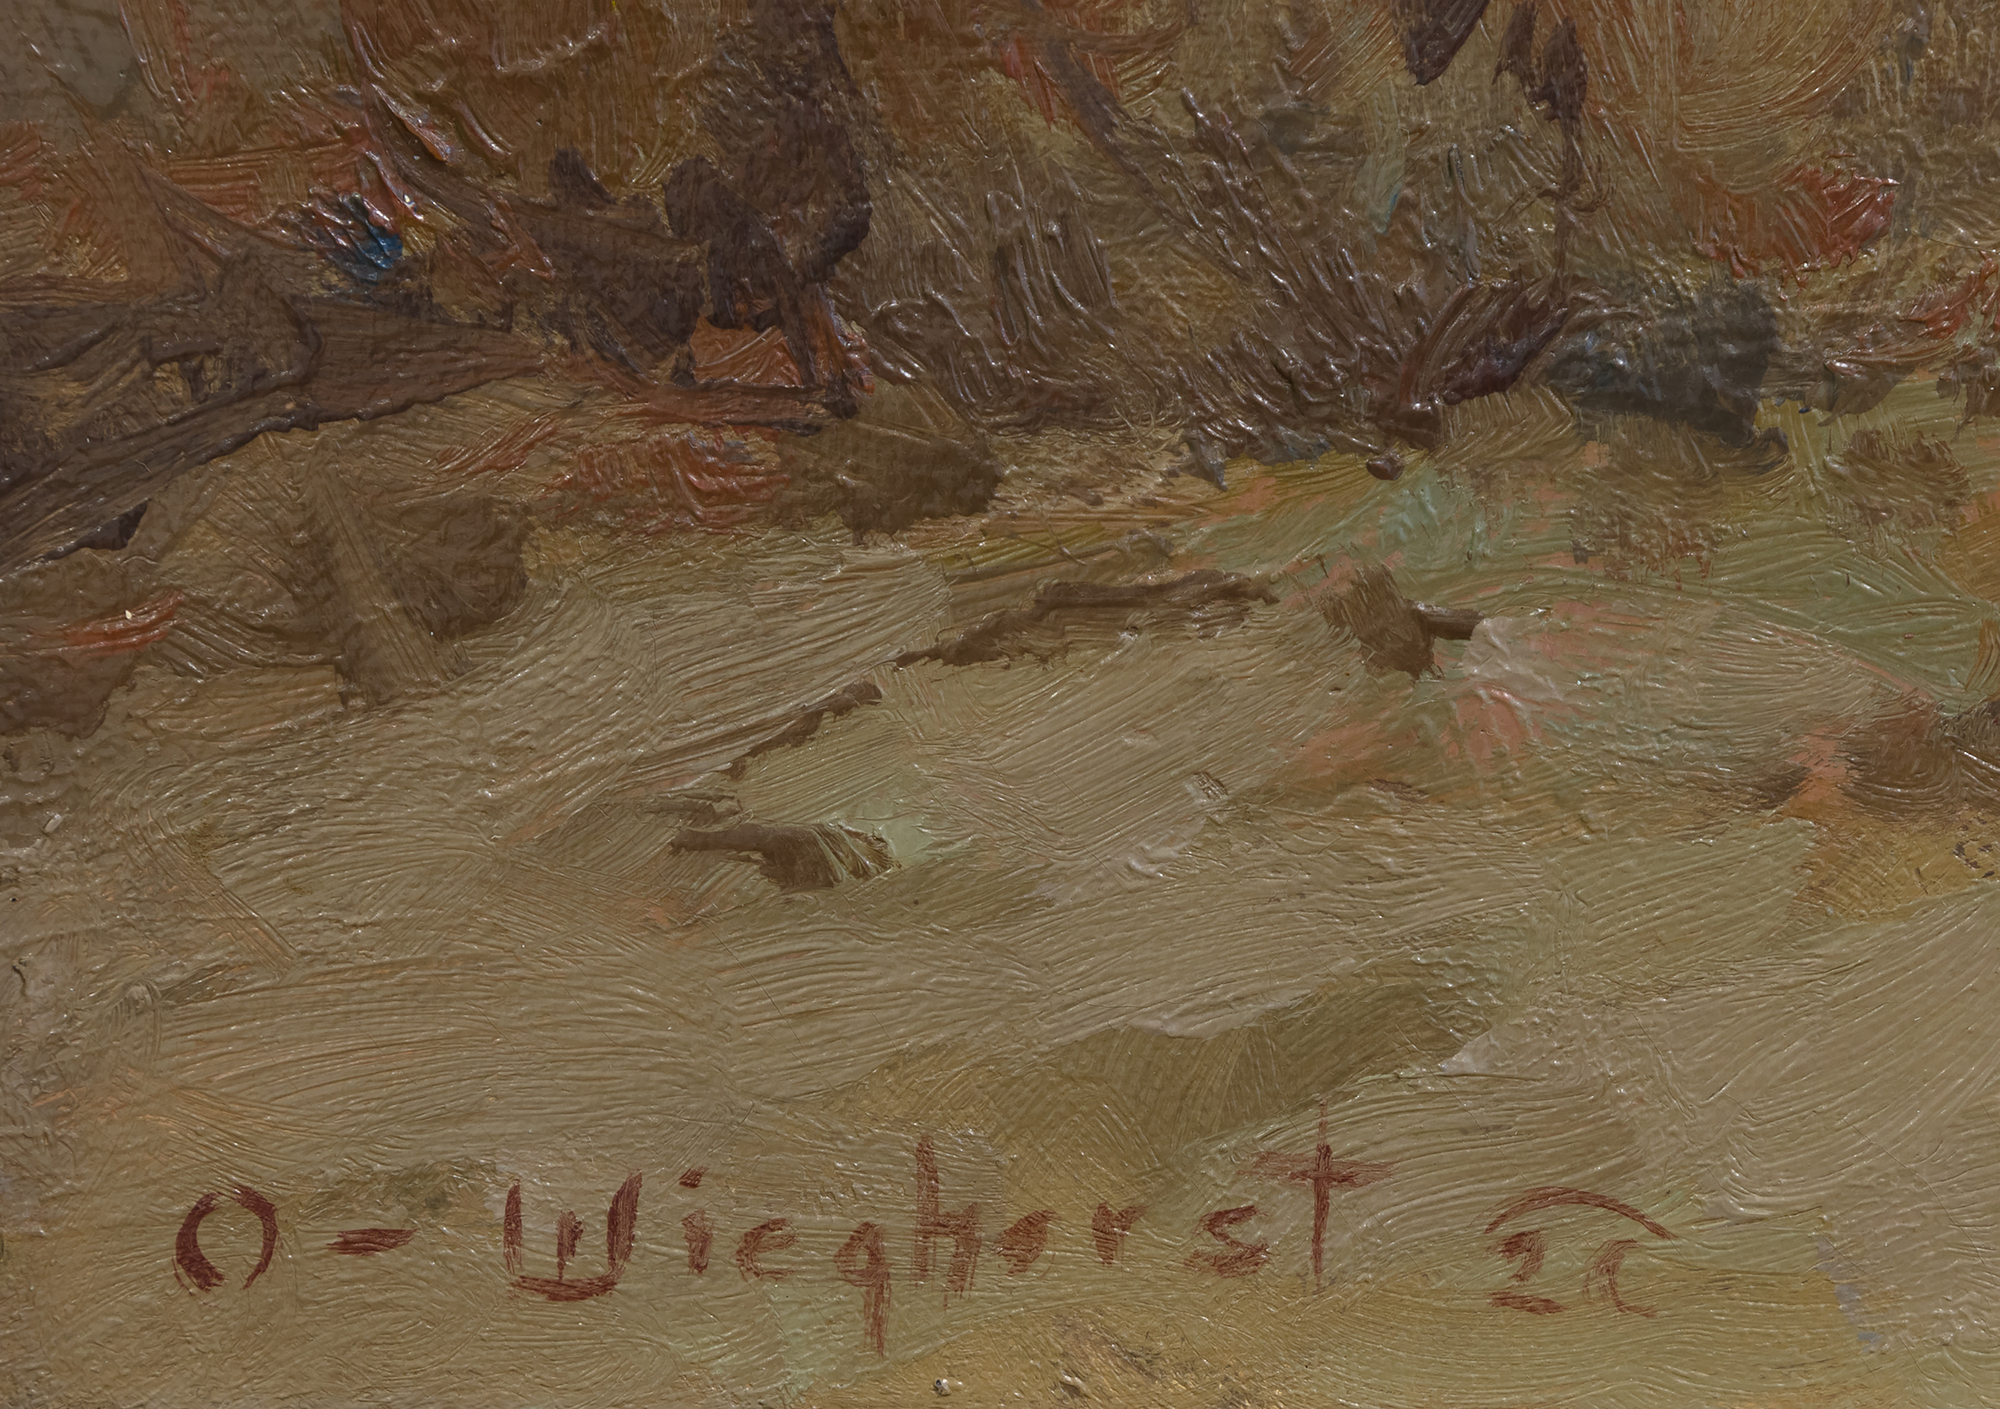 أولاف ويغهورست - أباتشي - زيت على قماش - 20 × 24 بوصة.